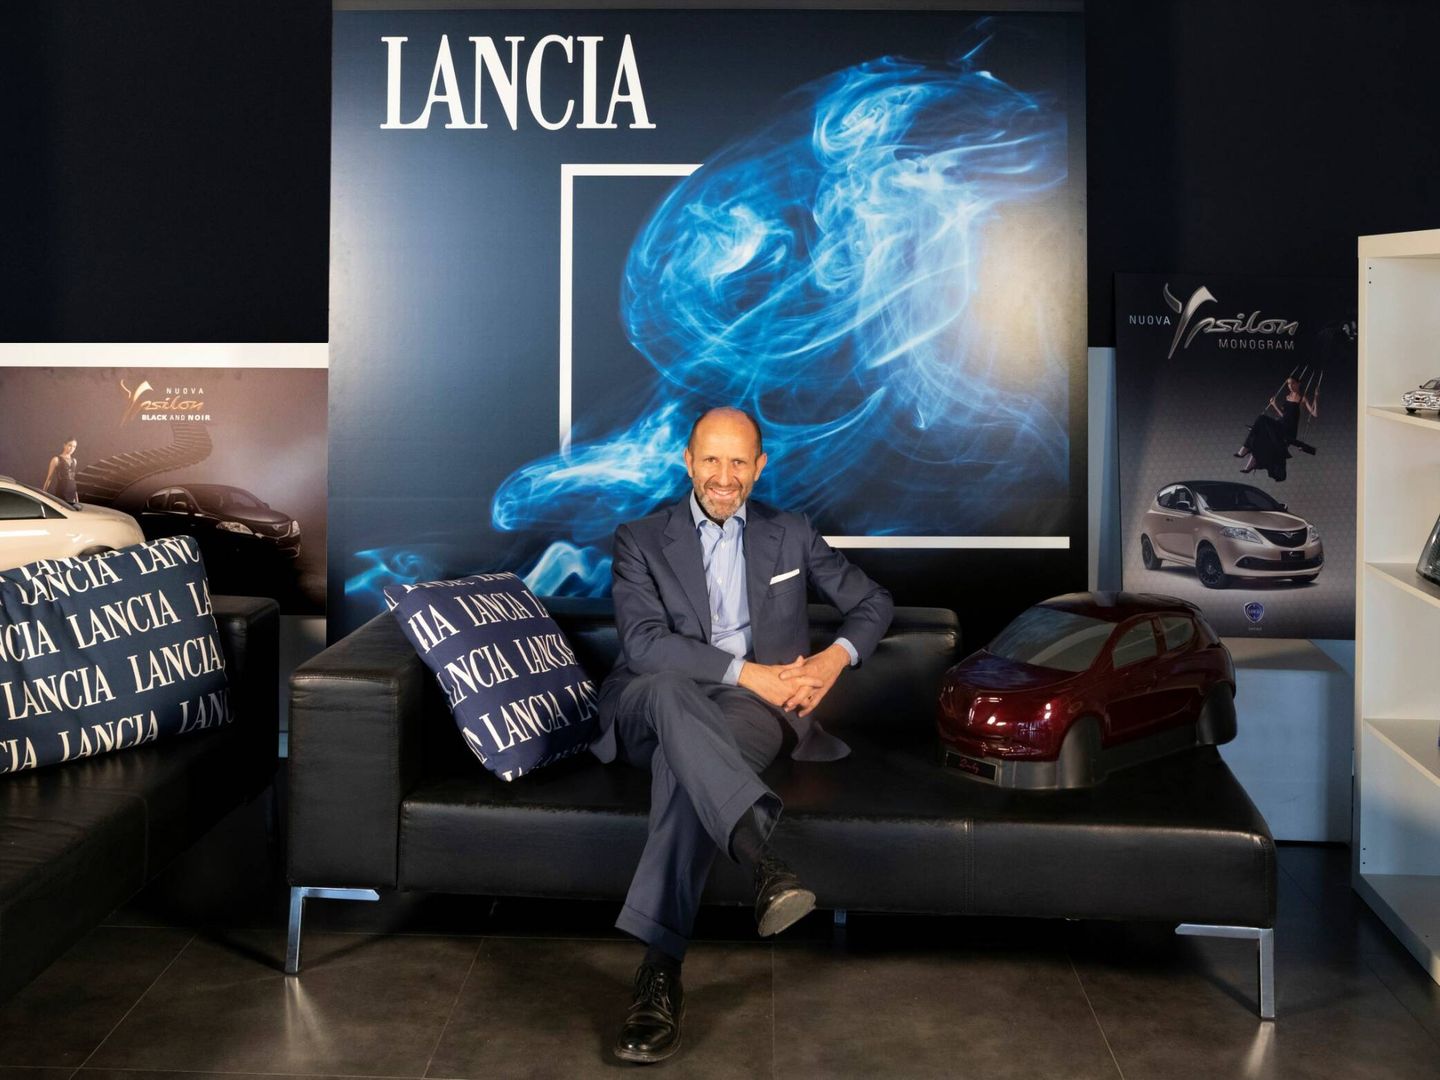 Napolitano explica que Lancia seguirá teniendo concesionarios propios en Italia, pero que fuera de ese país ve espacios más pequeños y compartidos con Alfa Romeo, pero cada una con su exposición.